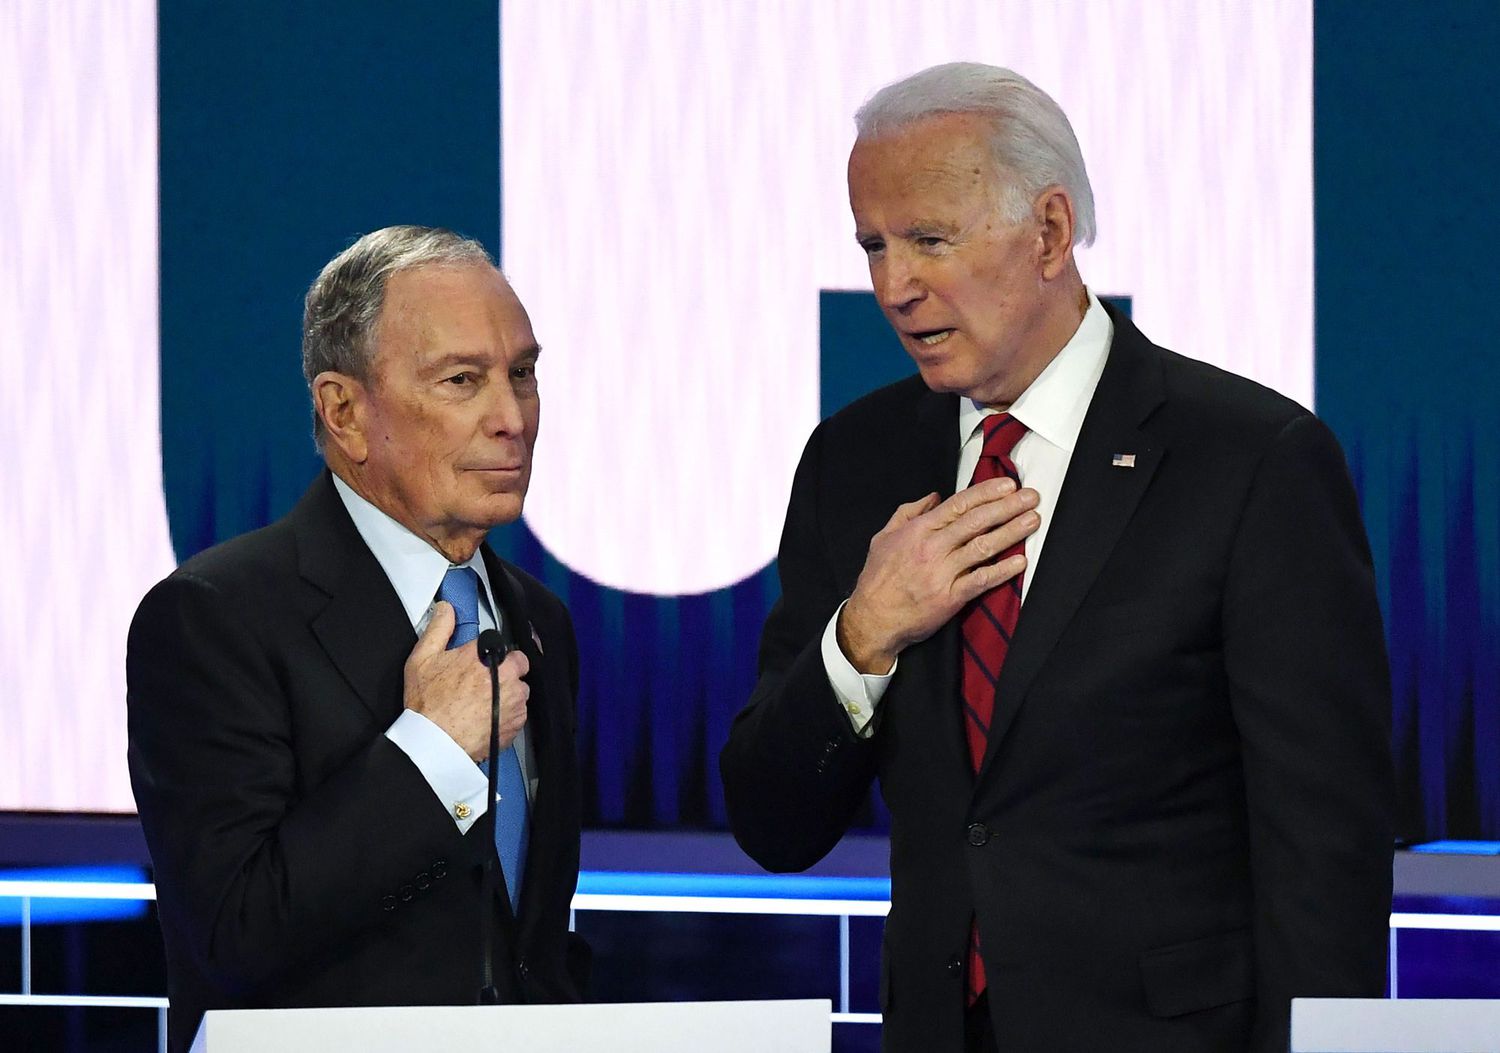 Bloomberg and Biden